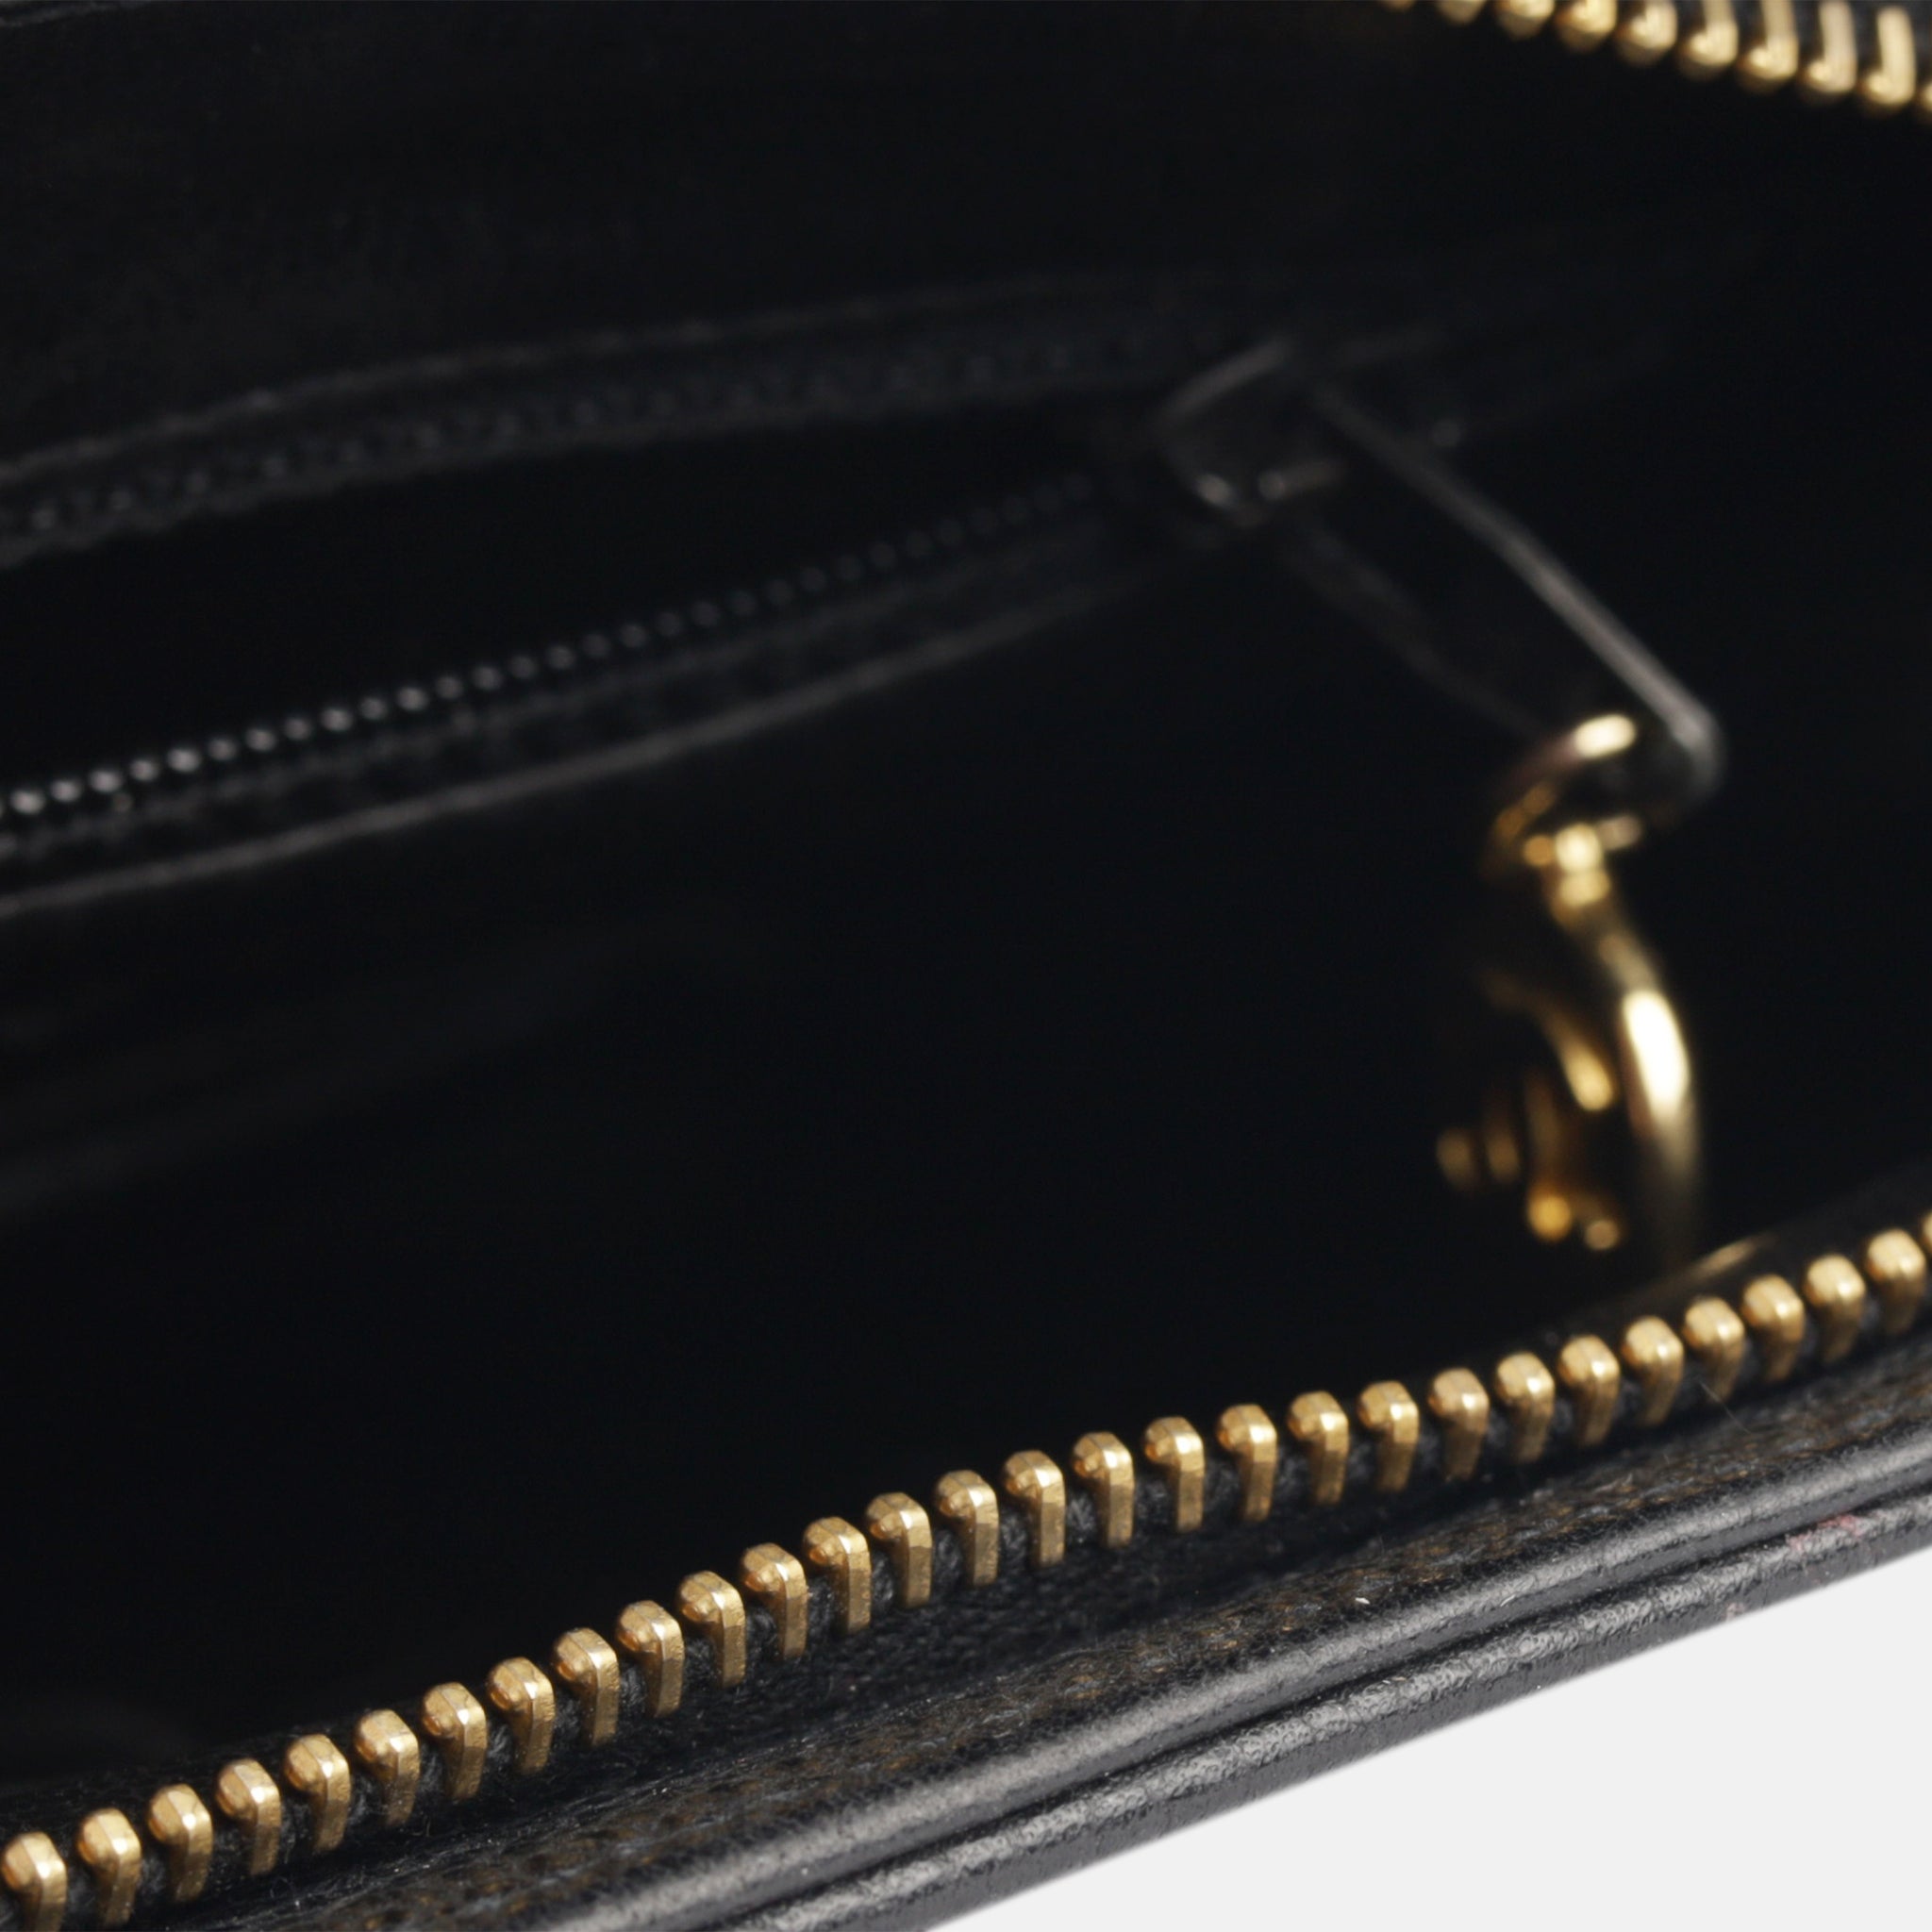 Chanel - Vintage Belt Bag - Pre-Loved - Black Caviar - GHW